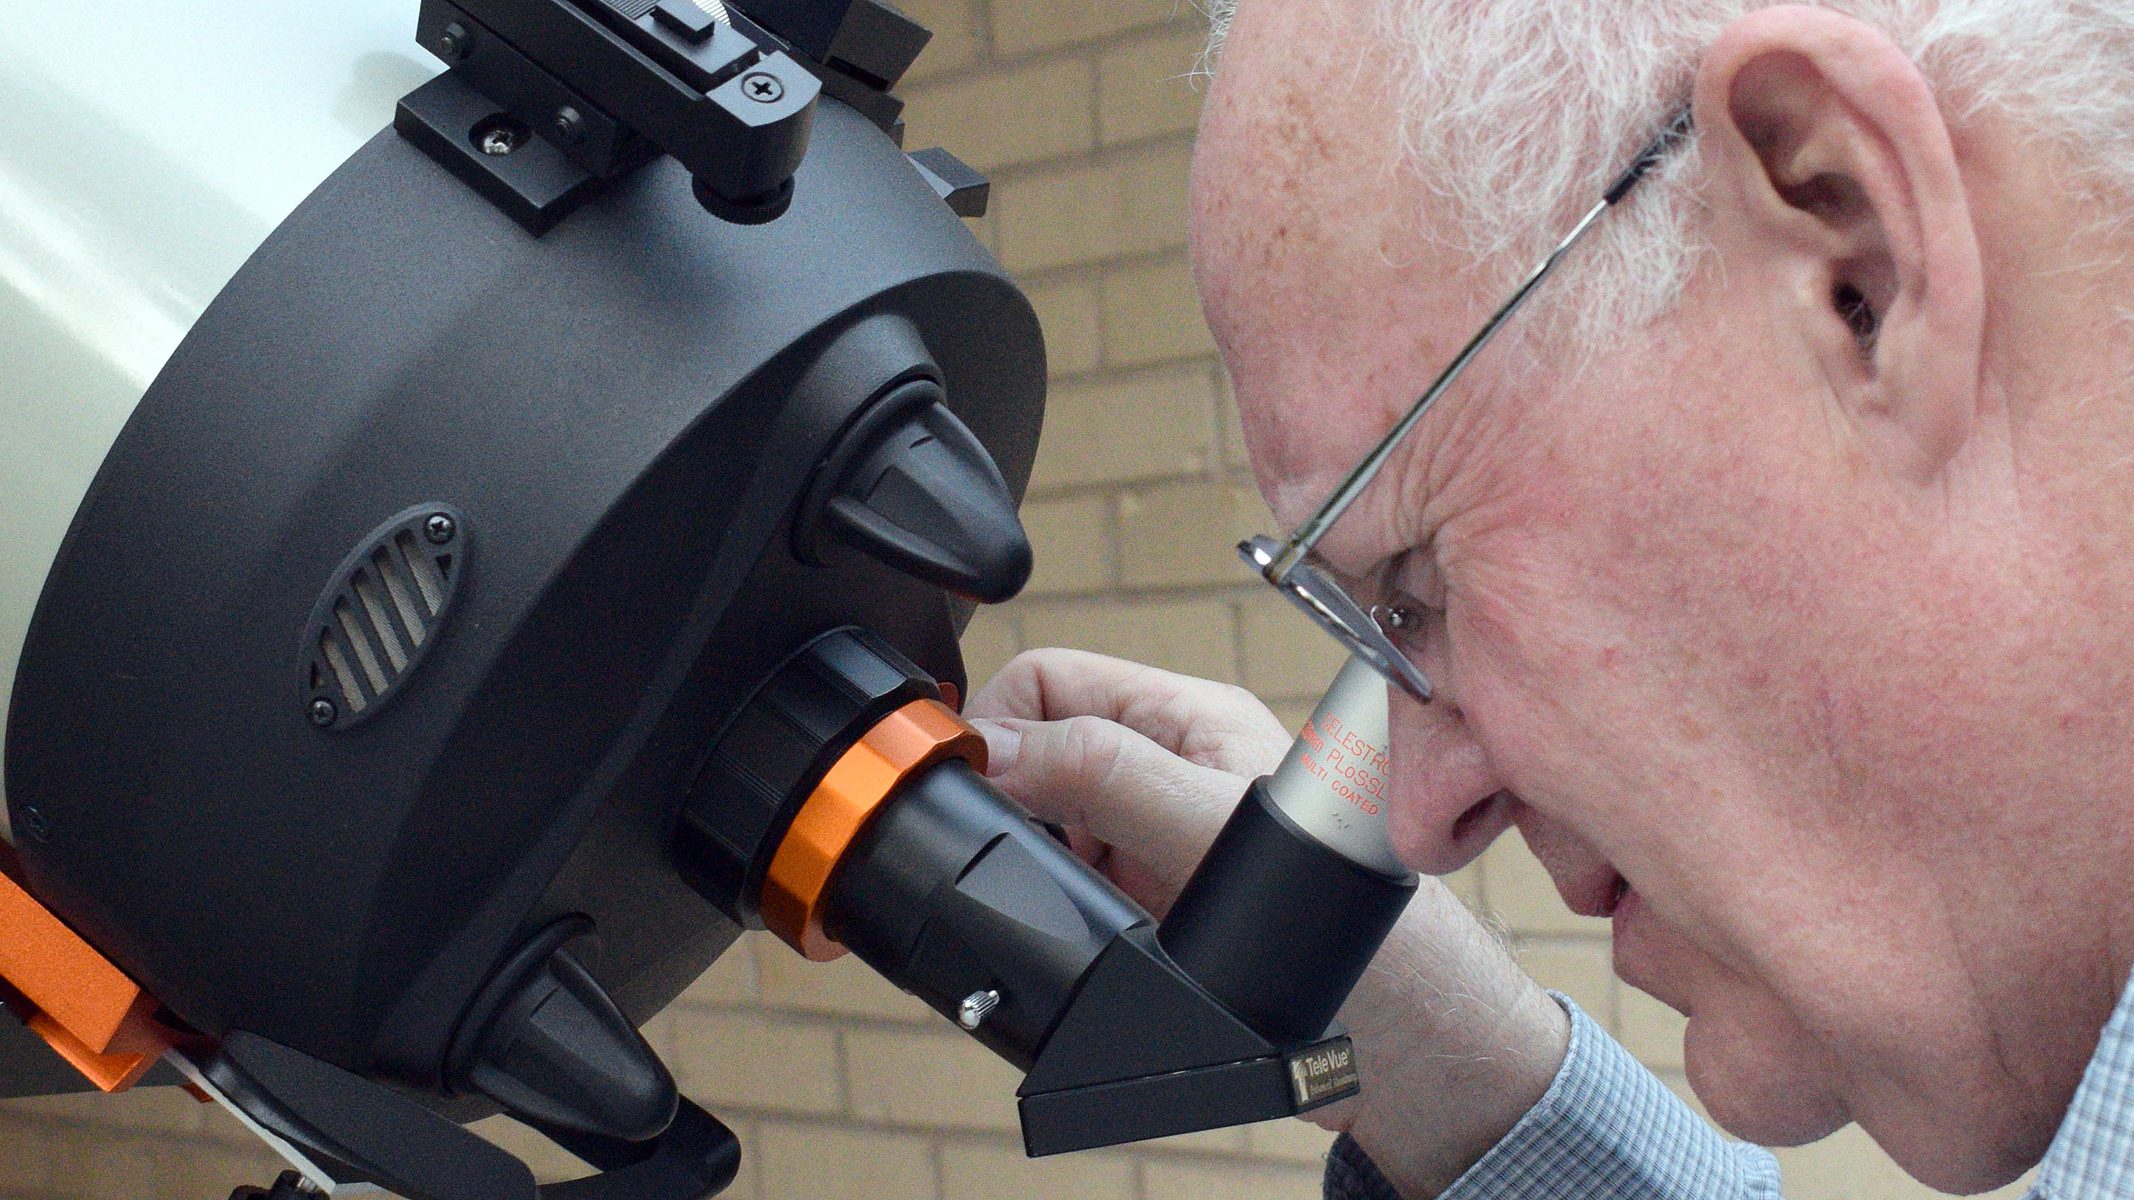 Autor patrzy przez okular na teleskopowym celestronie